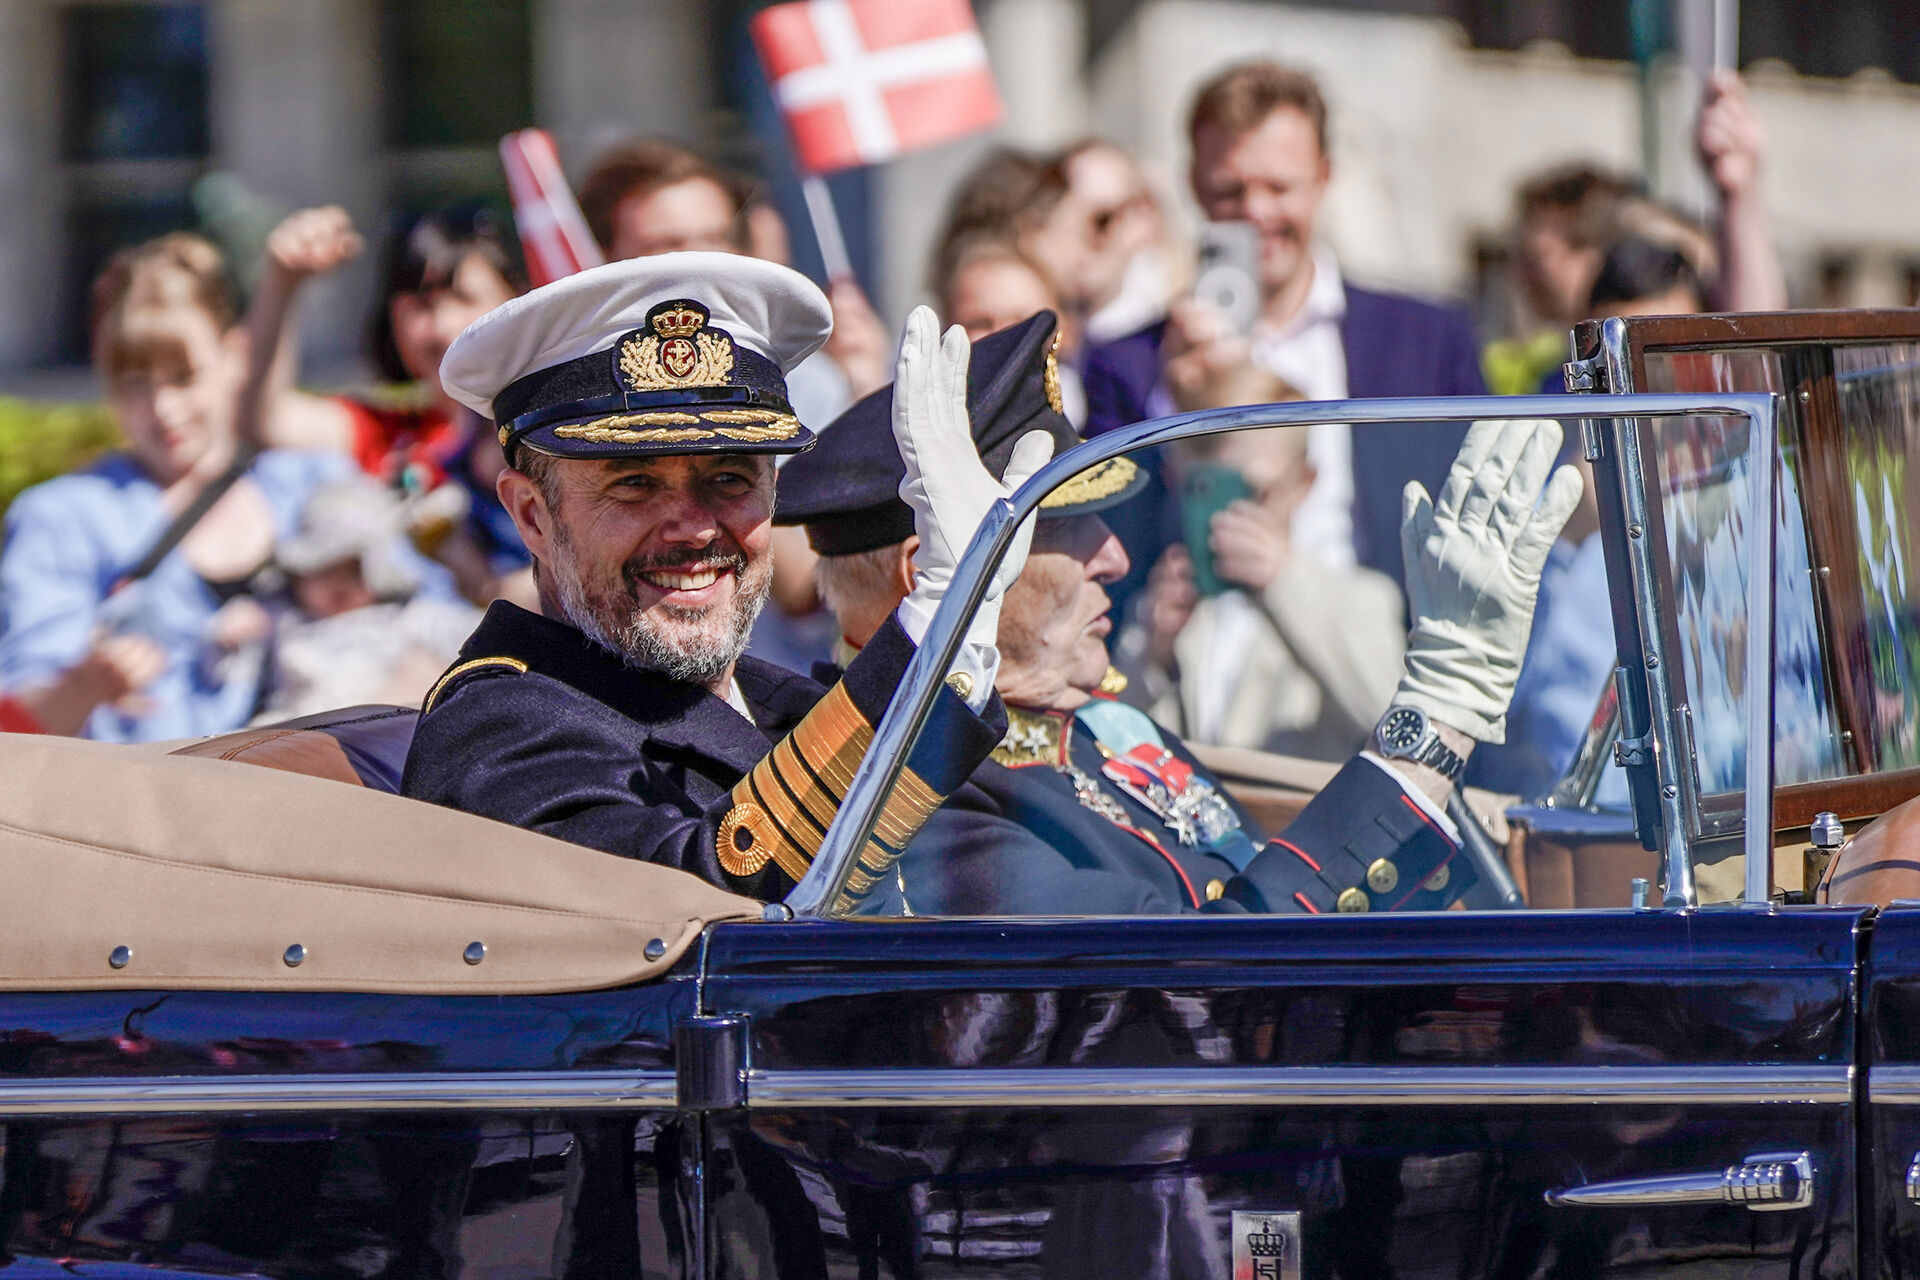 Государственный визит Короля и Королевы Дании в Норвегию. День 1. ОБНОВЛЯЕТСЯ 